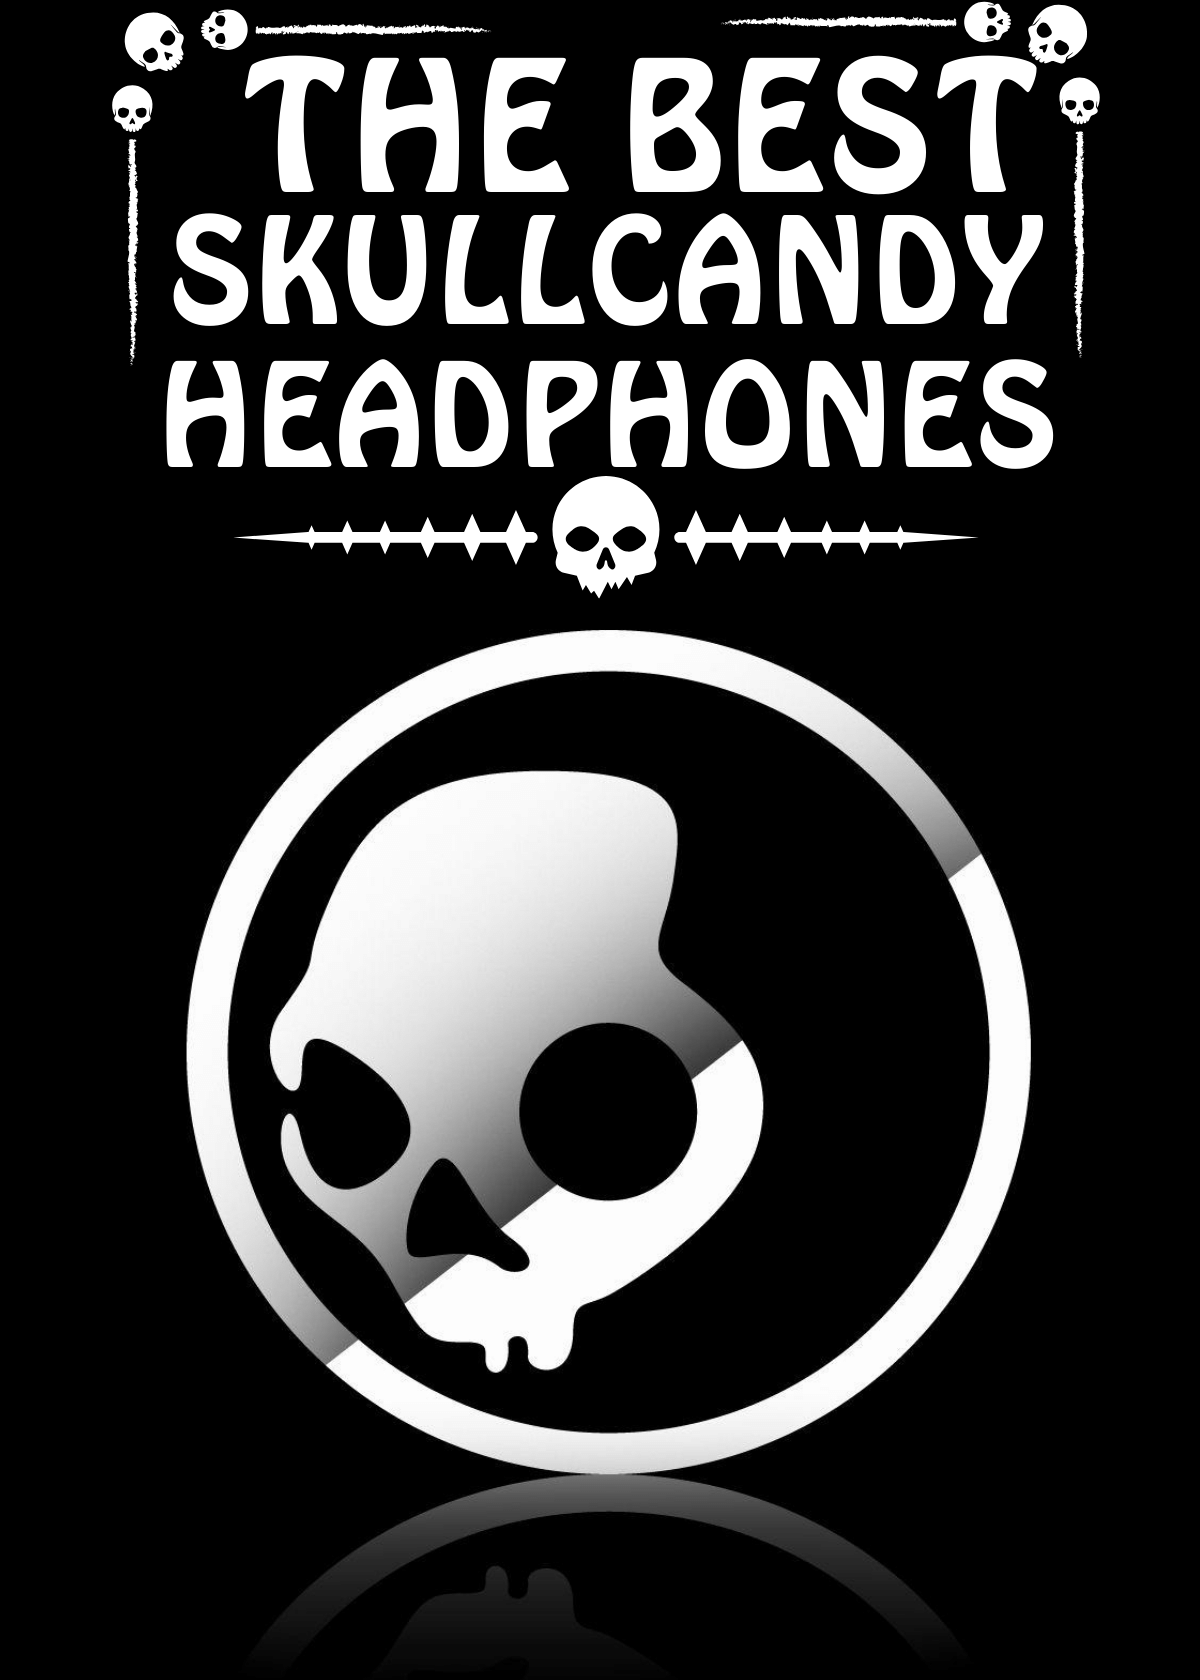 The Best SkullCandy Headphones